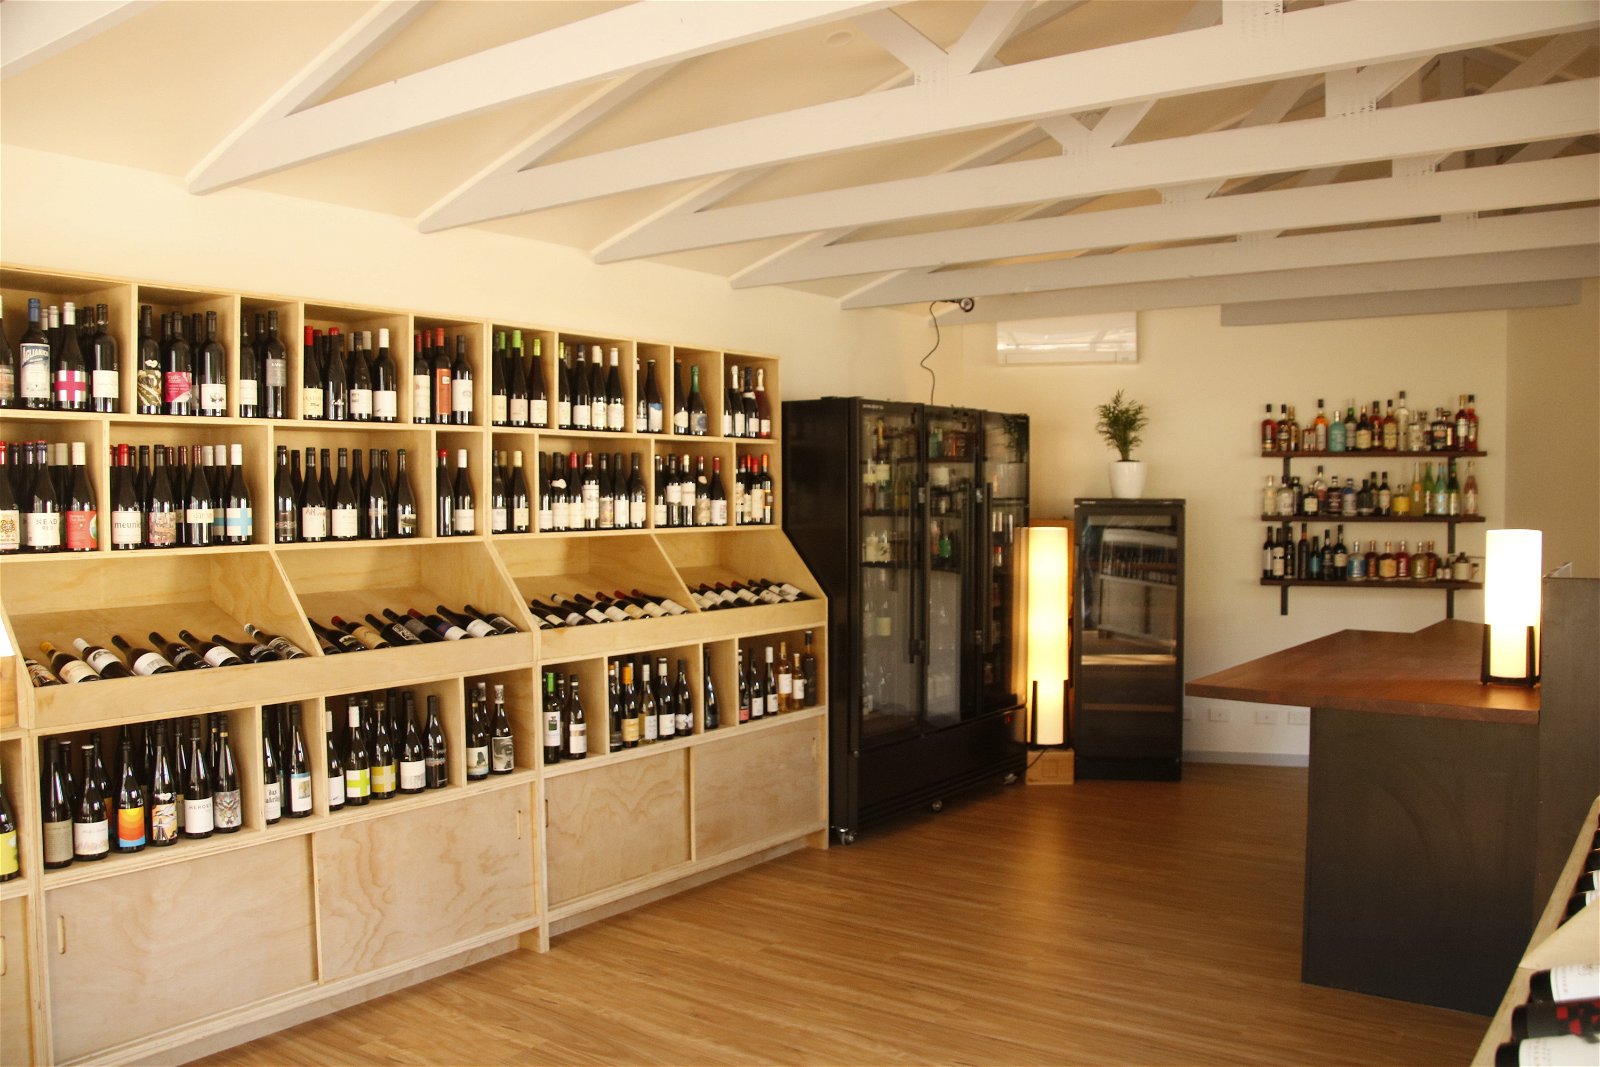 Grampians Wine Cellar - Food Delivery Shop